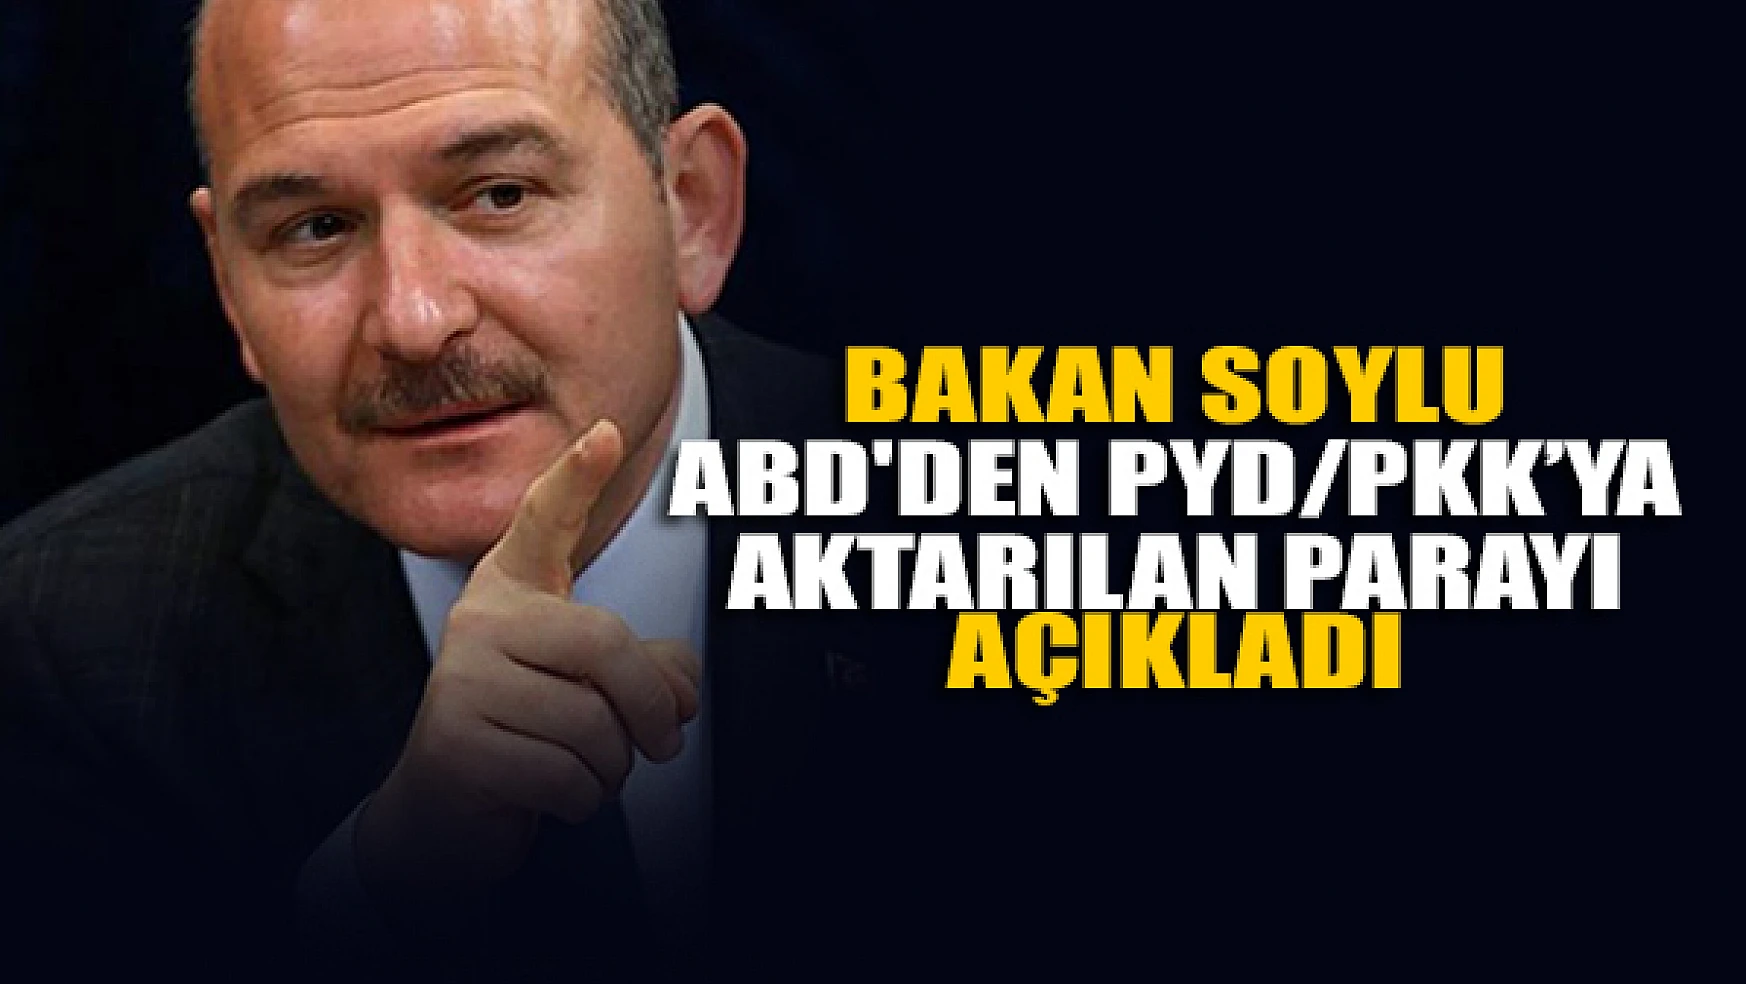 Bakan Soylu, ABD'den PYD/PKK'ya aktarılan parayı açıkladı